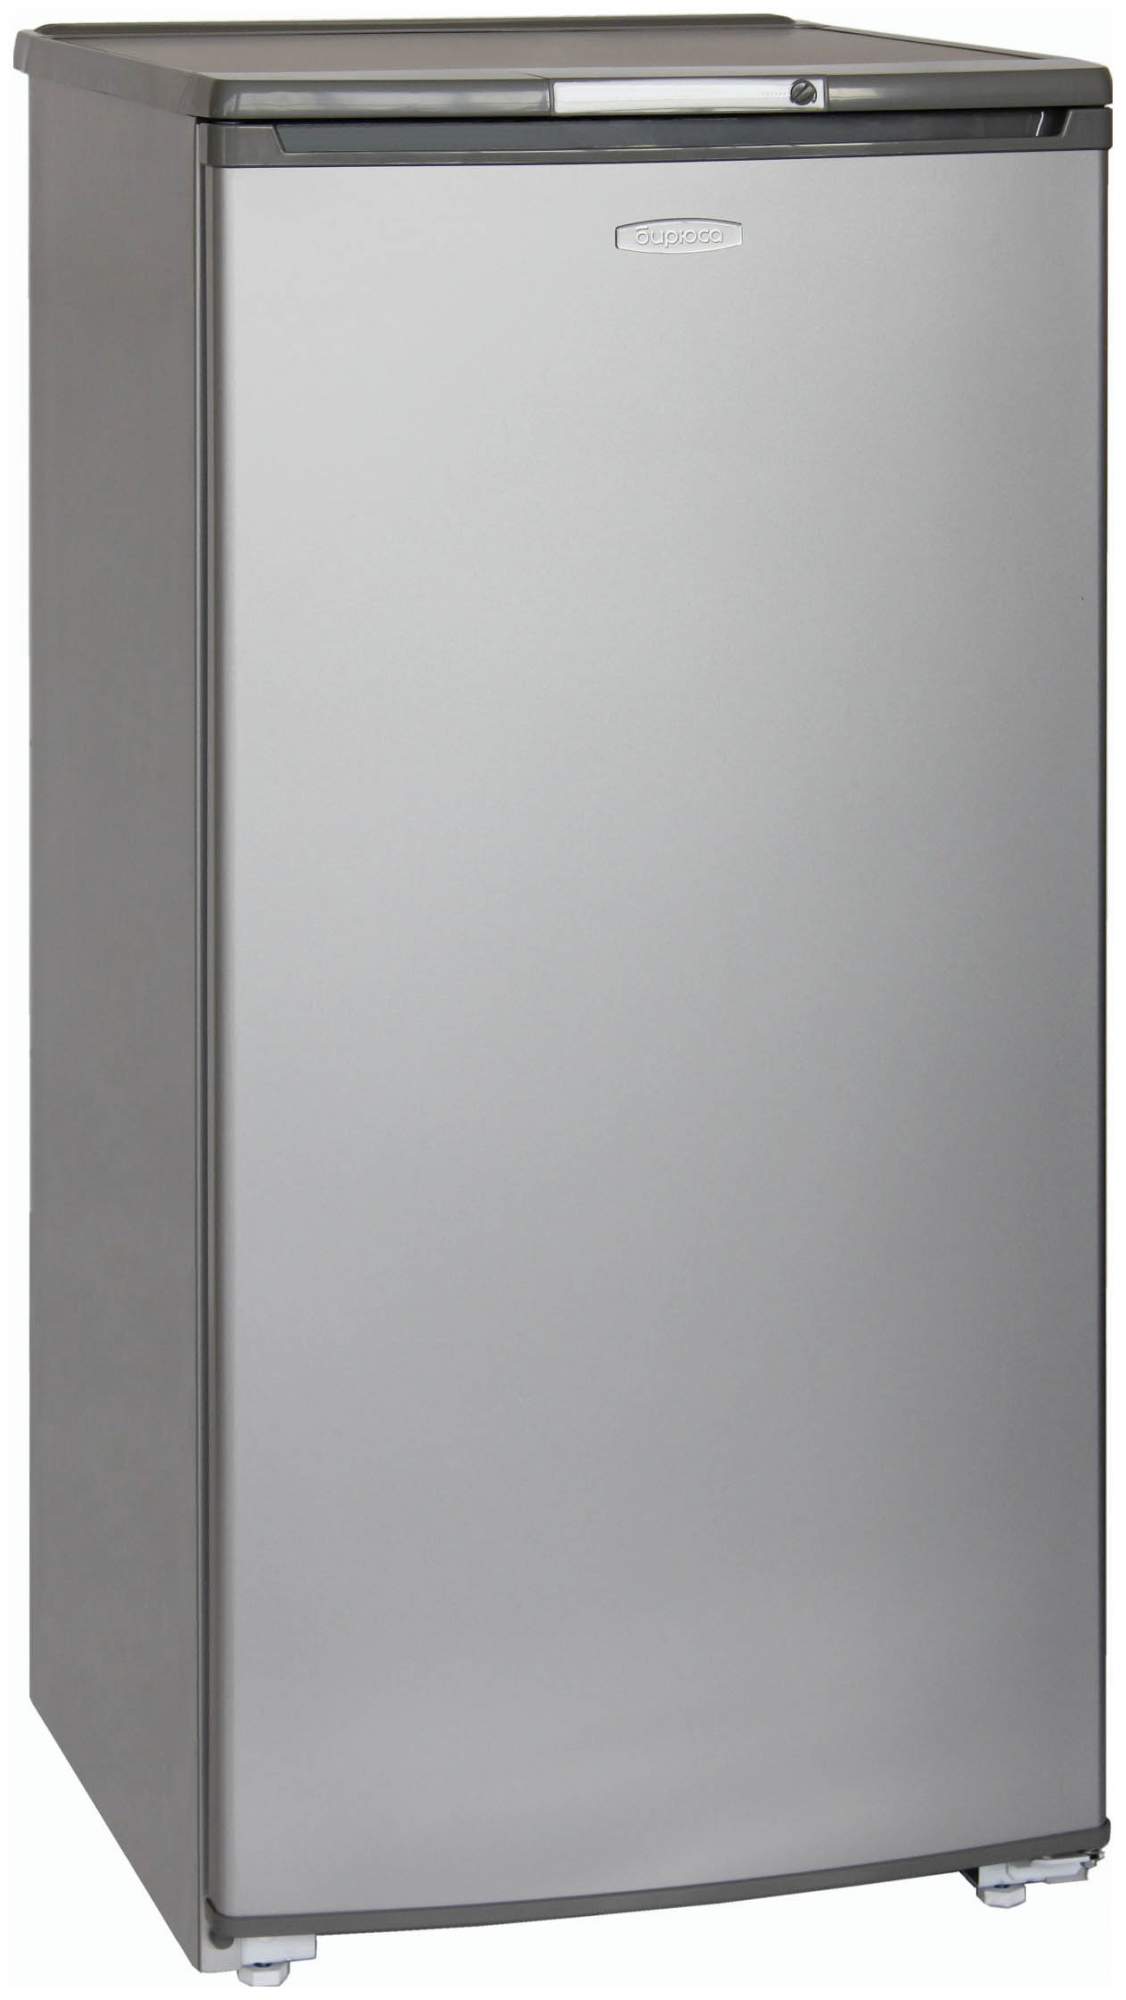 Холодильник Бирюса Б-M10 серебристый, купить в Москве, цены в интернет-магазинах на Мегамаркет